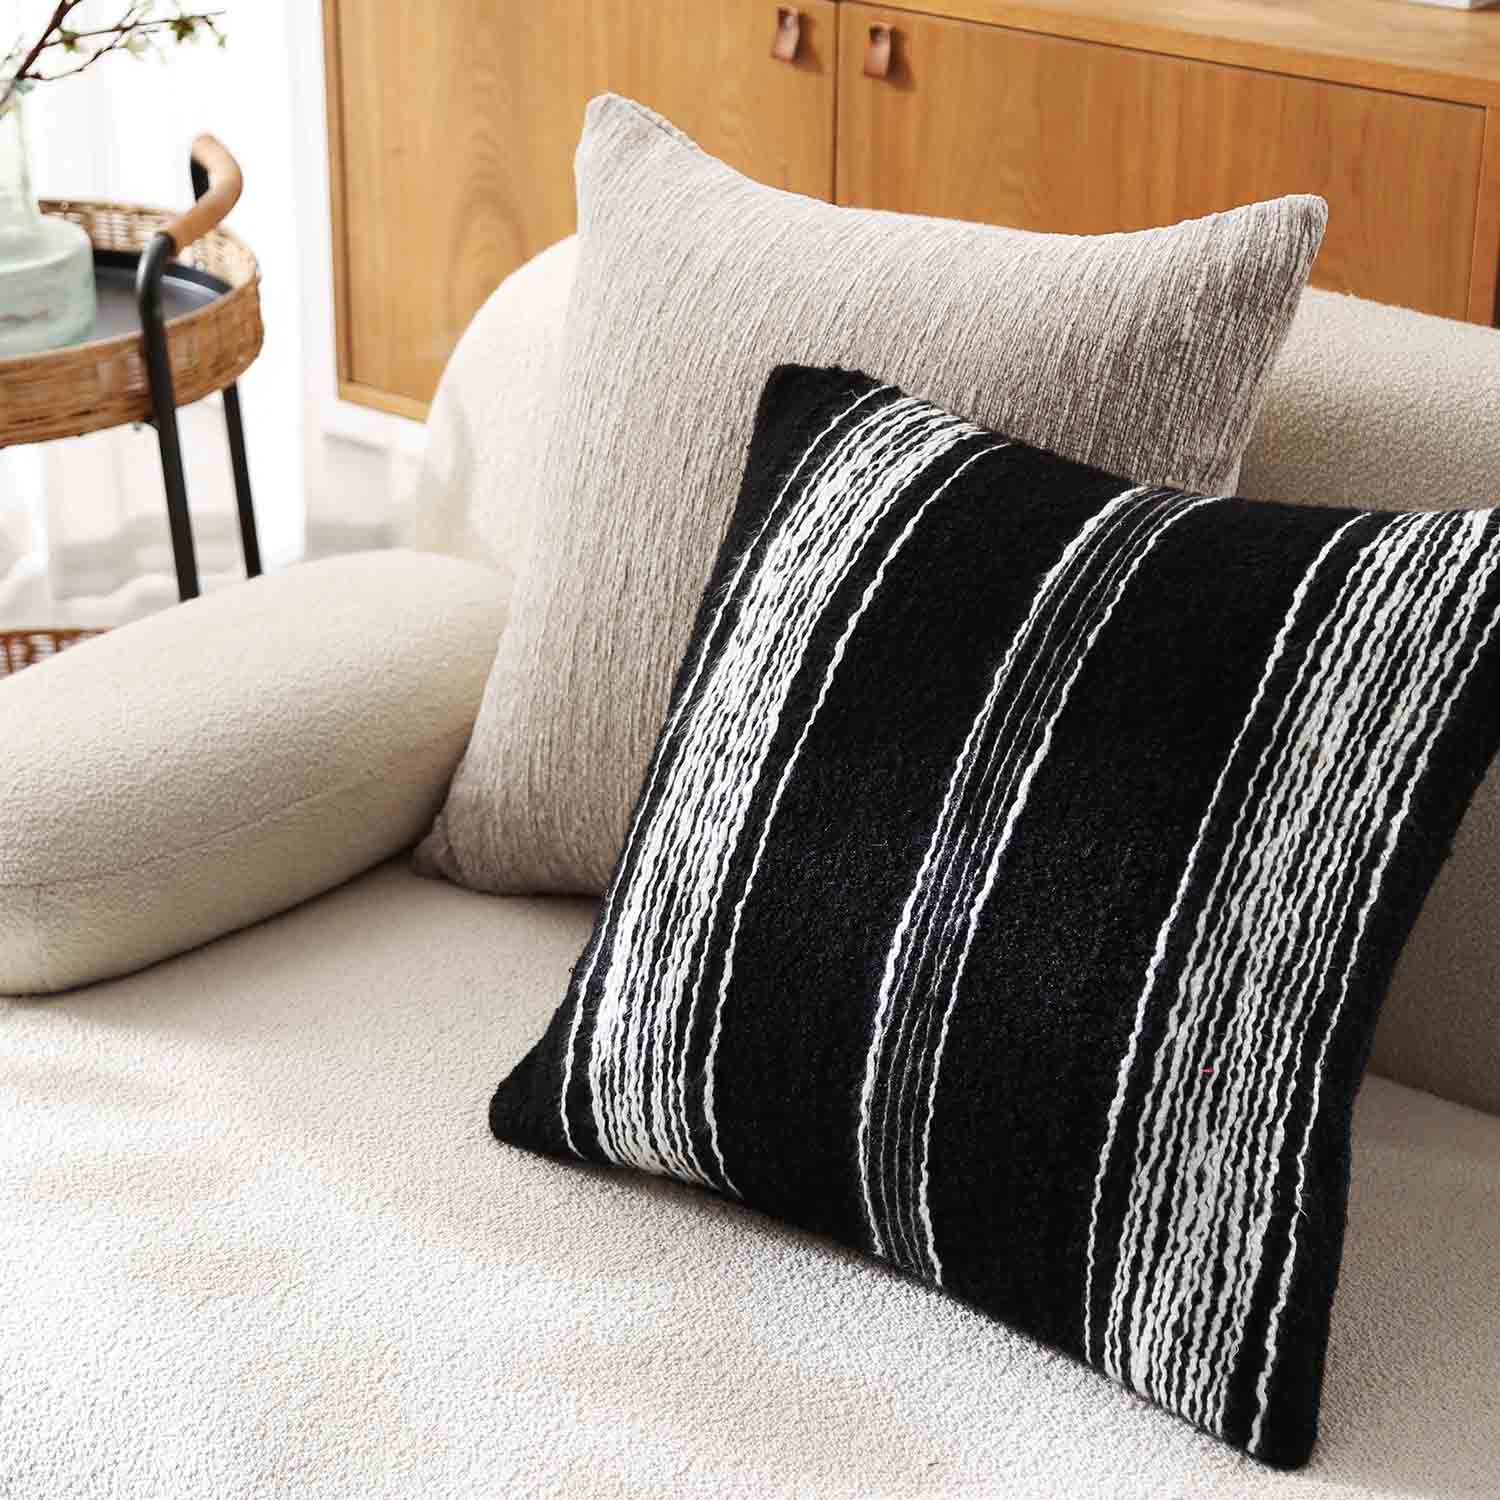 Larino Textured Chenille Decorative Pillow Cover-